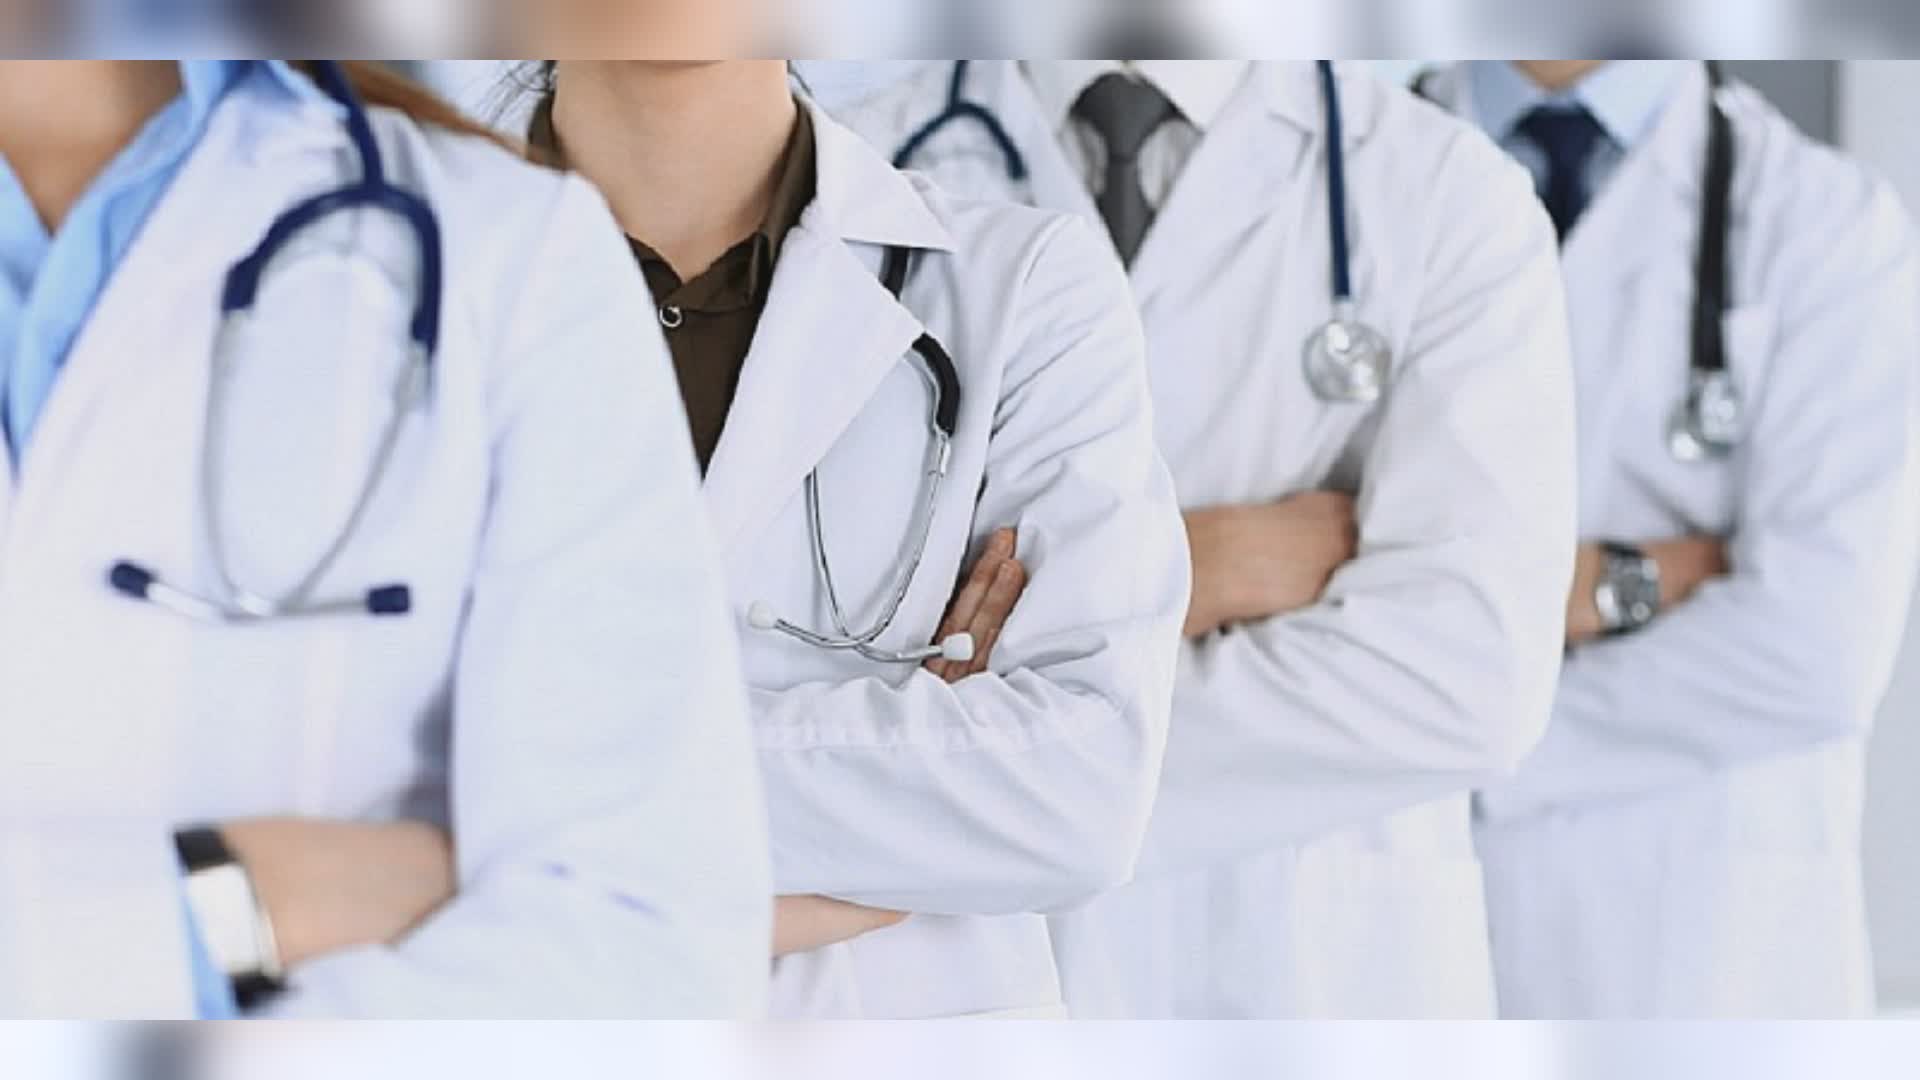 Sanità, Regione Liguria finanzia 80 borse di studio per la specializzazione di medici. Toti: "Supporto in ambito ospedaliero e territoriale"